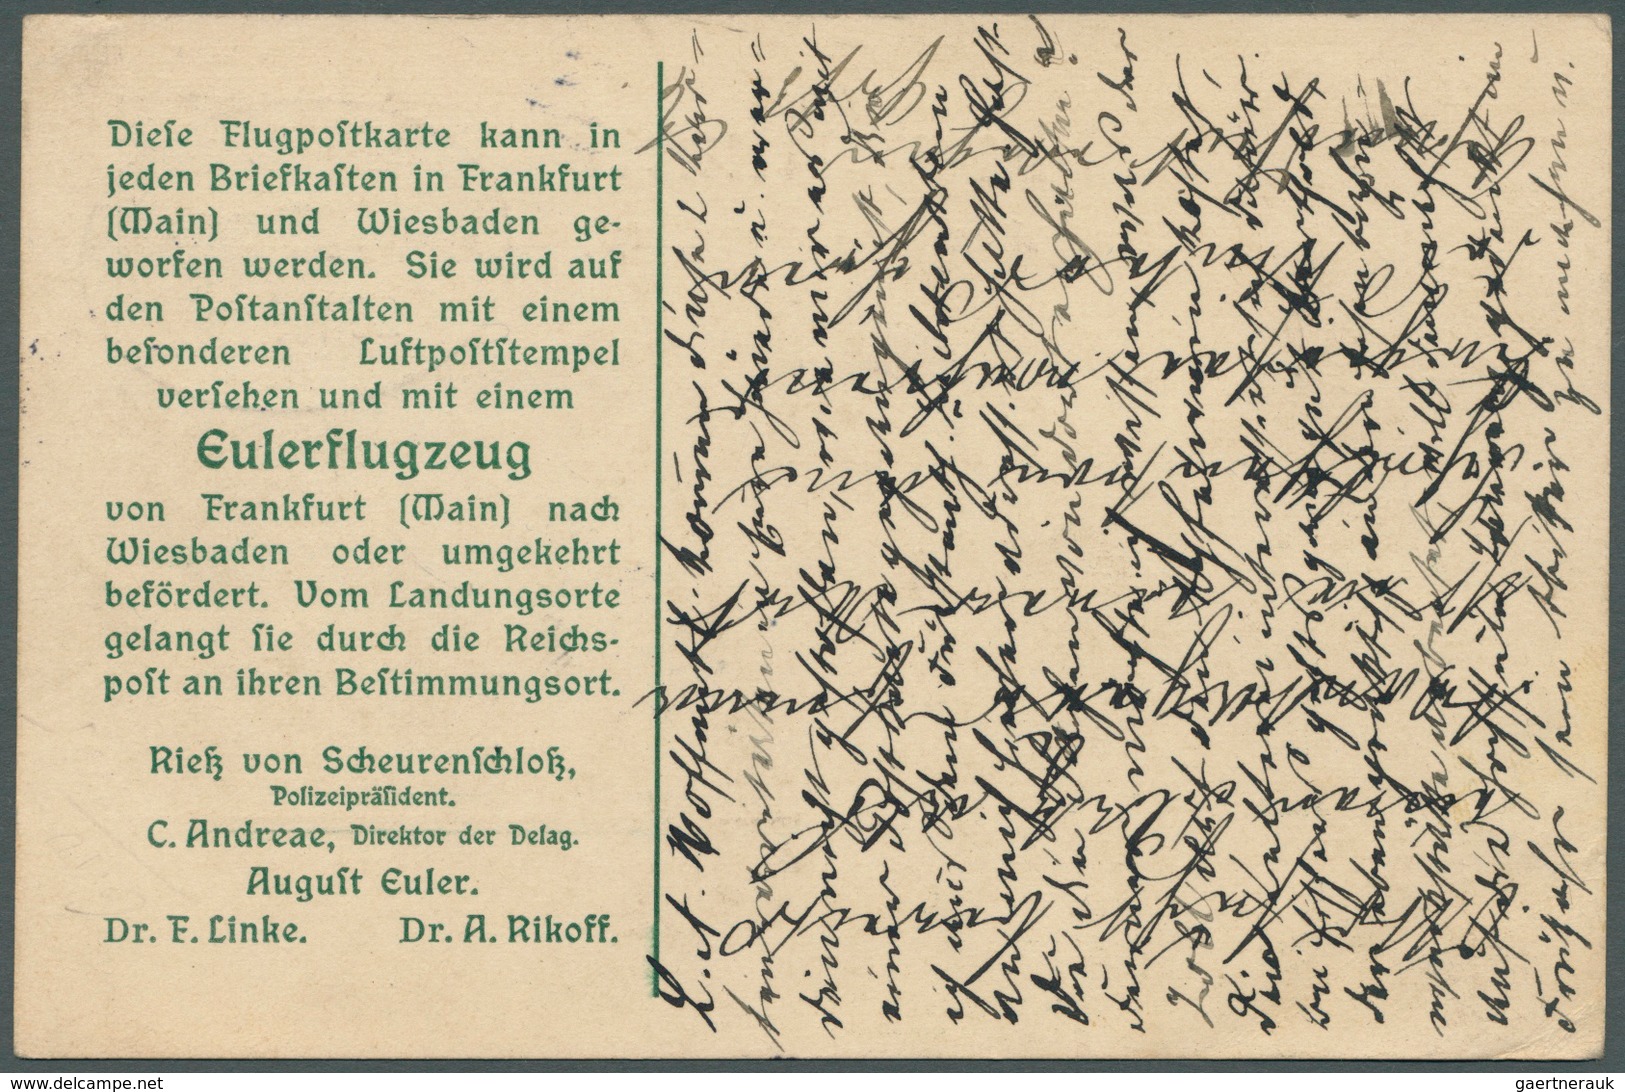 Deutsch-Südwestafrika - Besonderheiten: 1912, Ganzsachenkarte "NATIONALFLUGSPENDE" Mit Ovalstempel " - German South West Africa